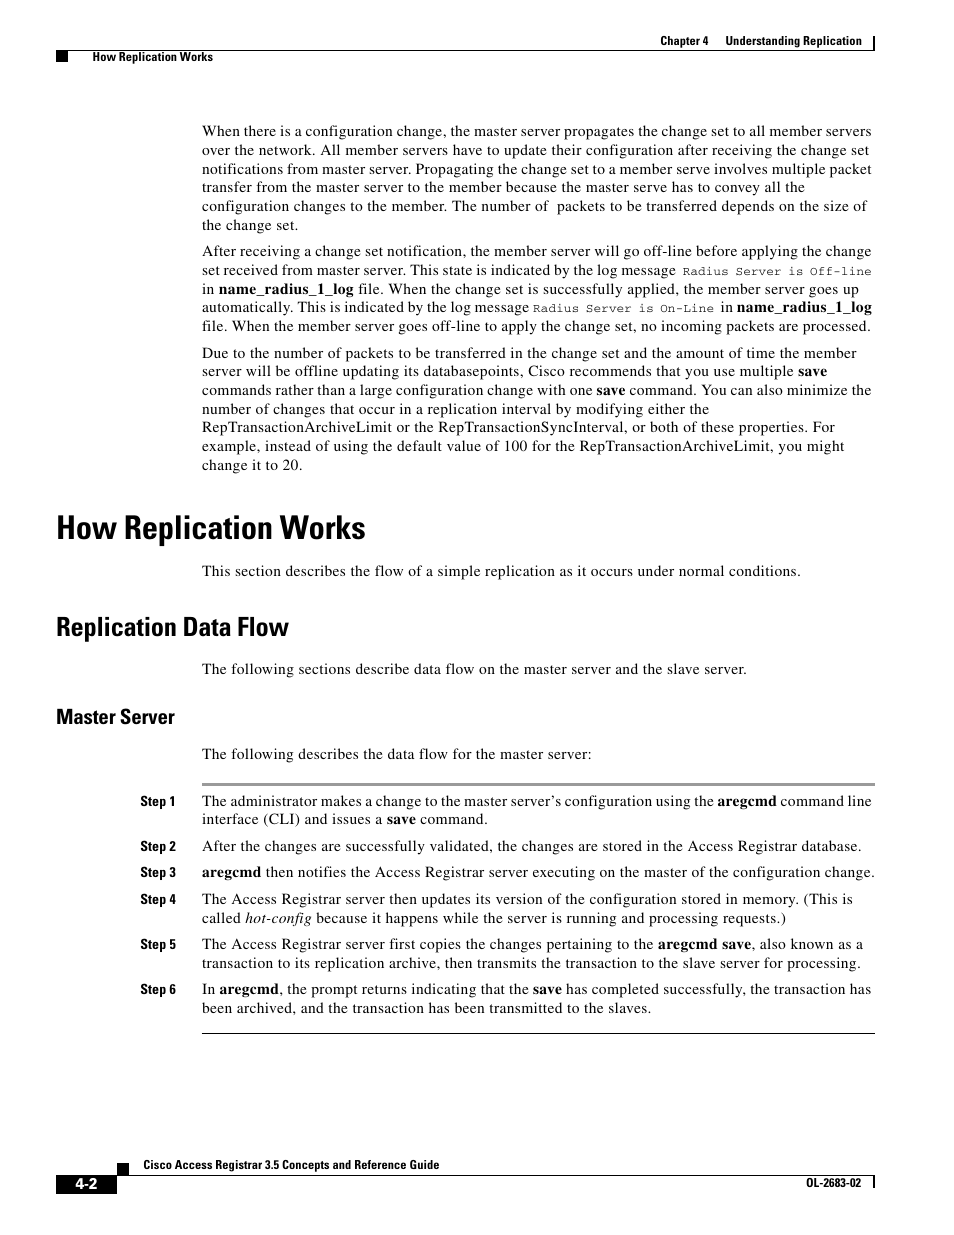 How replication works, Replication data flow, Master server | Cisco Cisco Access Registrar 3.5 User Manual | Page 40 / 80